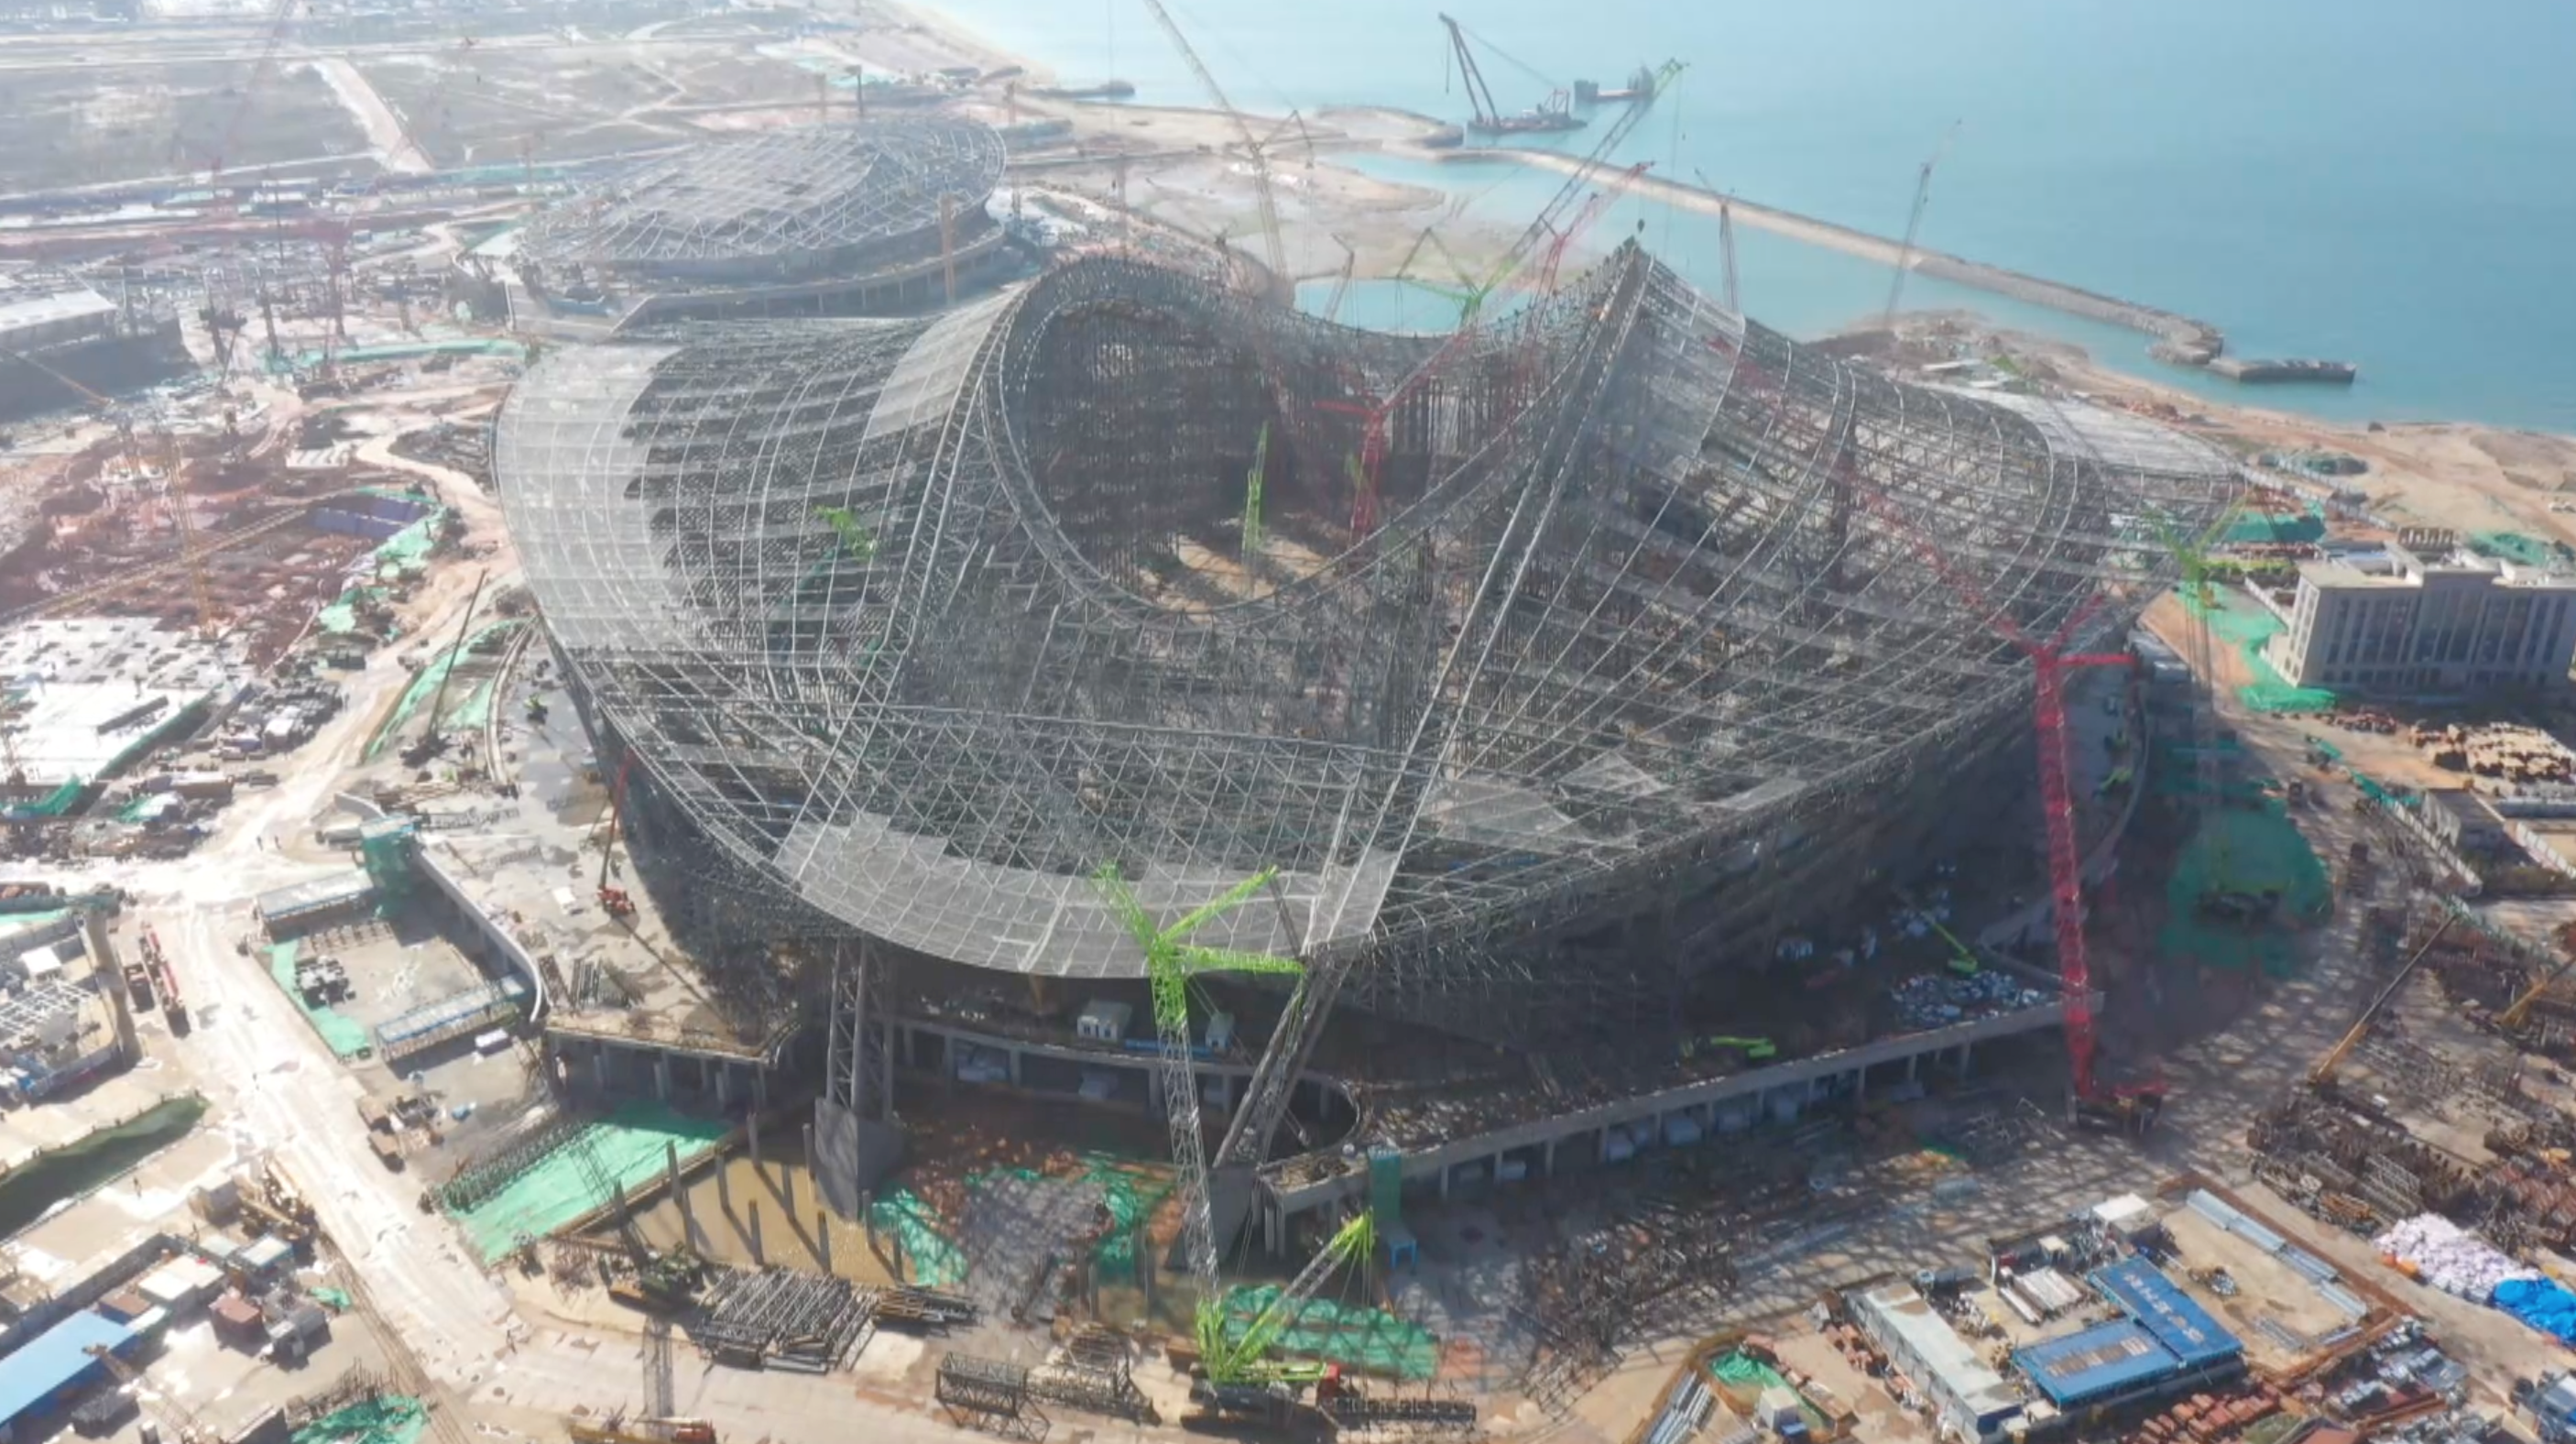 2023年亚洲杯足球场馆主体落成 预计年底竣工